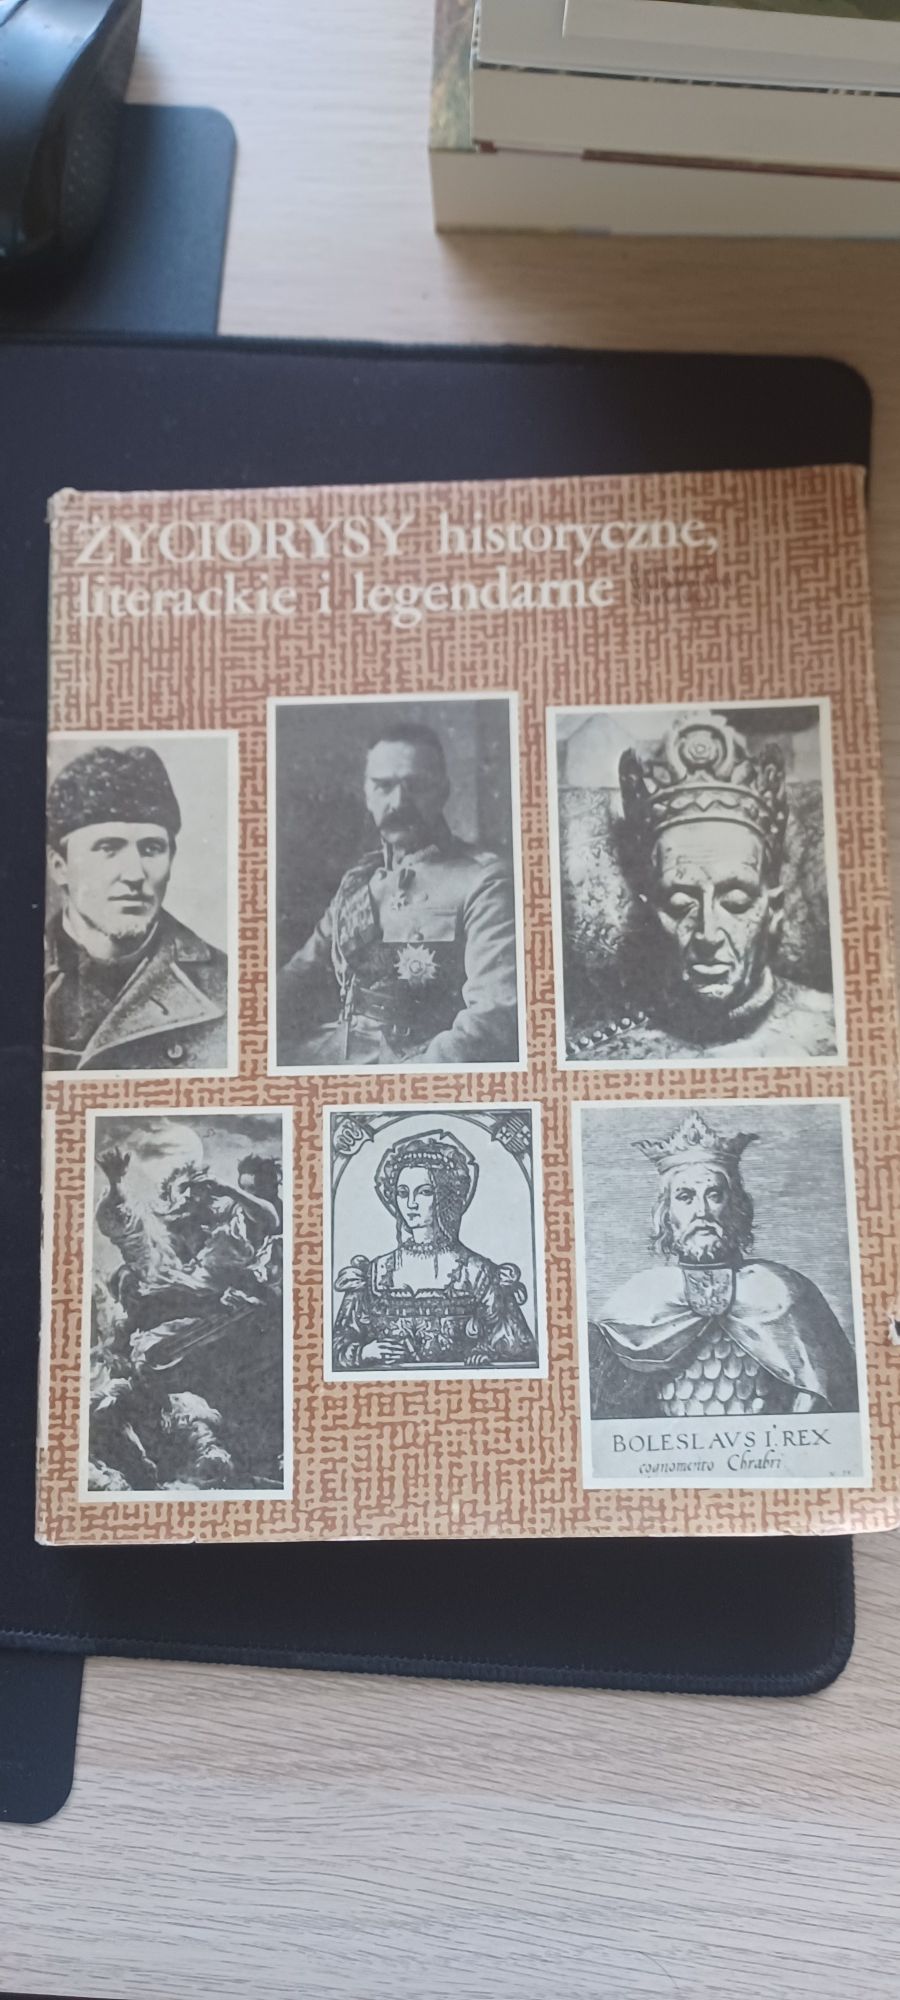 Książka Życiorysy historyczne literackie i legendarne